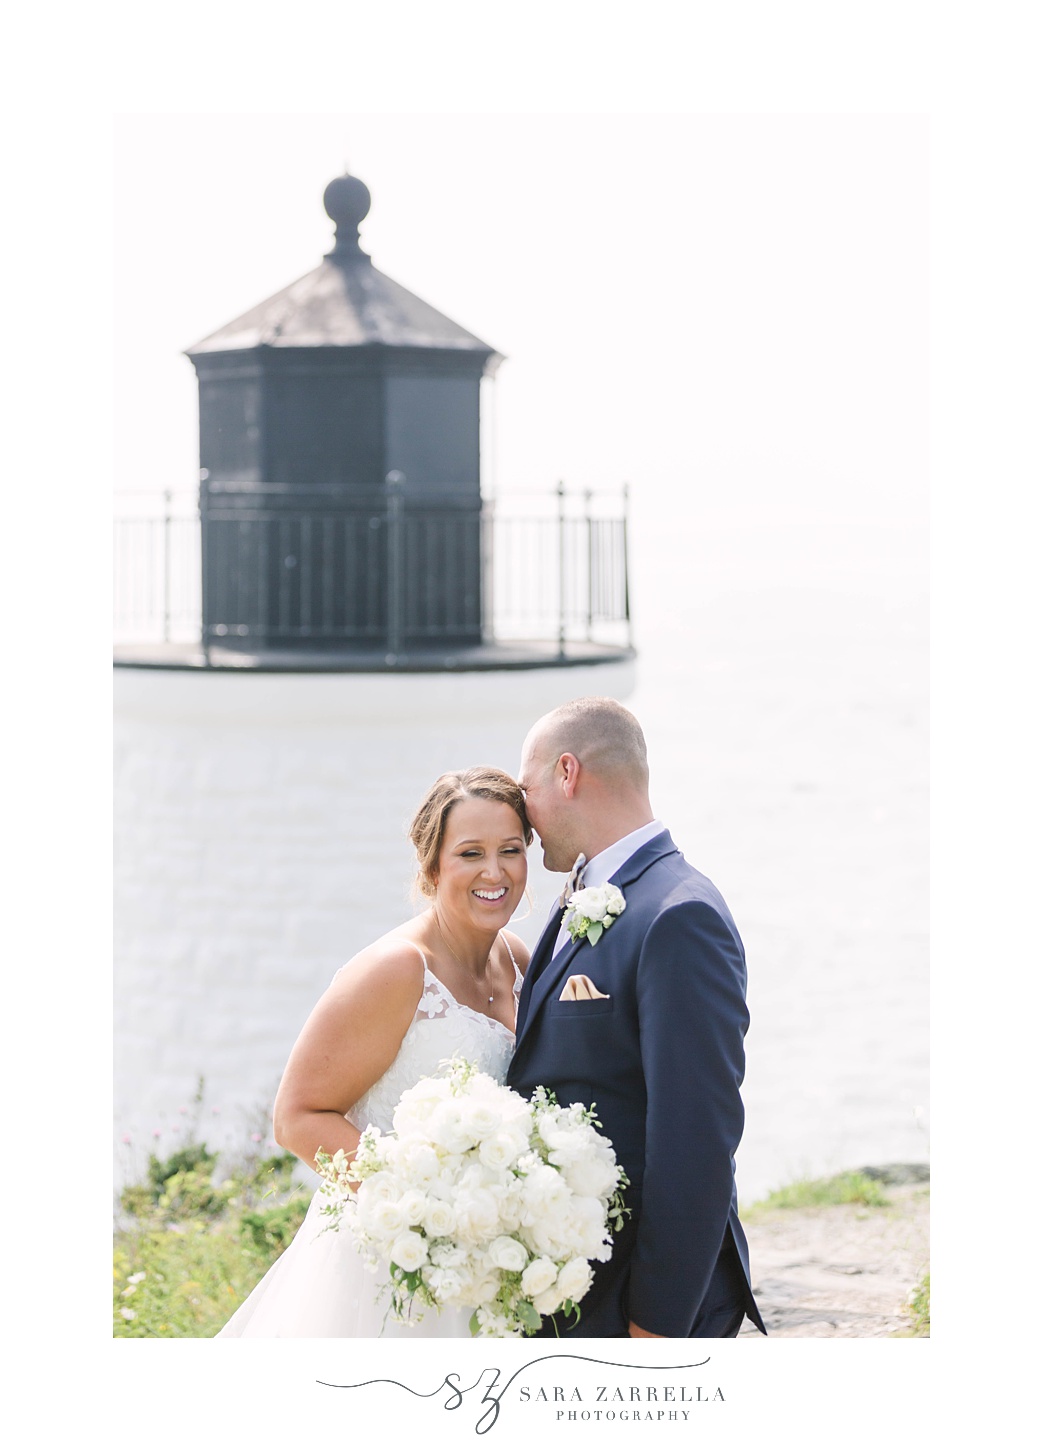 newlyweds pose by Newport RI lighthouse 